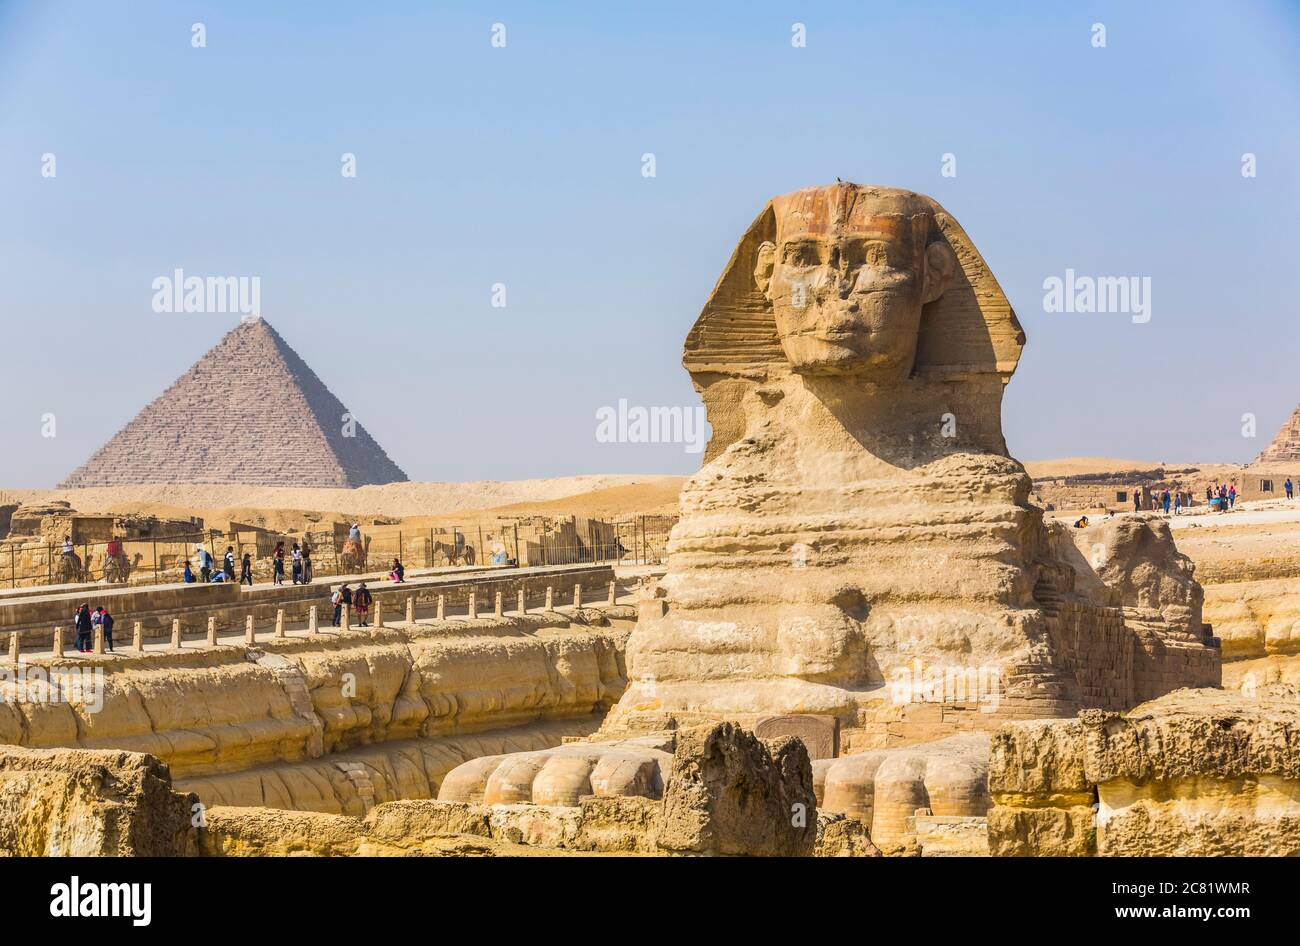 Grand Sphinx de Gizeh, Pyramide de Mycerinus (arrière-plan), complexe de la pyramide de Gizeh, site du patrimoine mondial de l'UNESCO; Gizeh, Égypte Banque D'Images